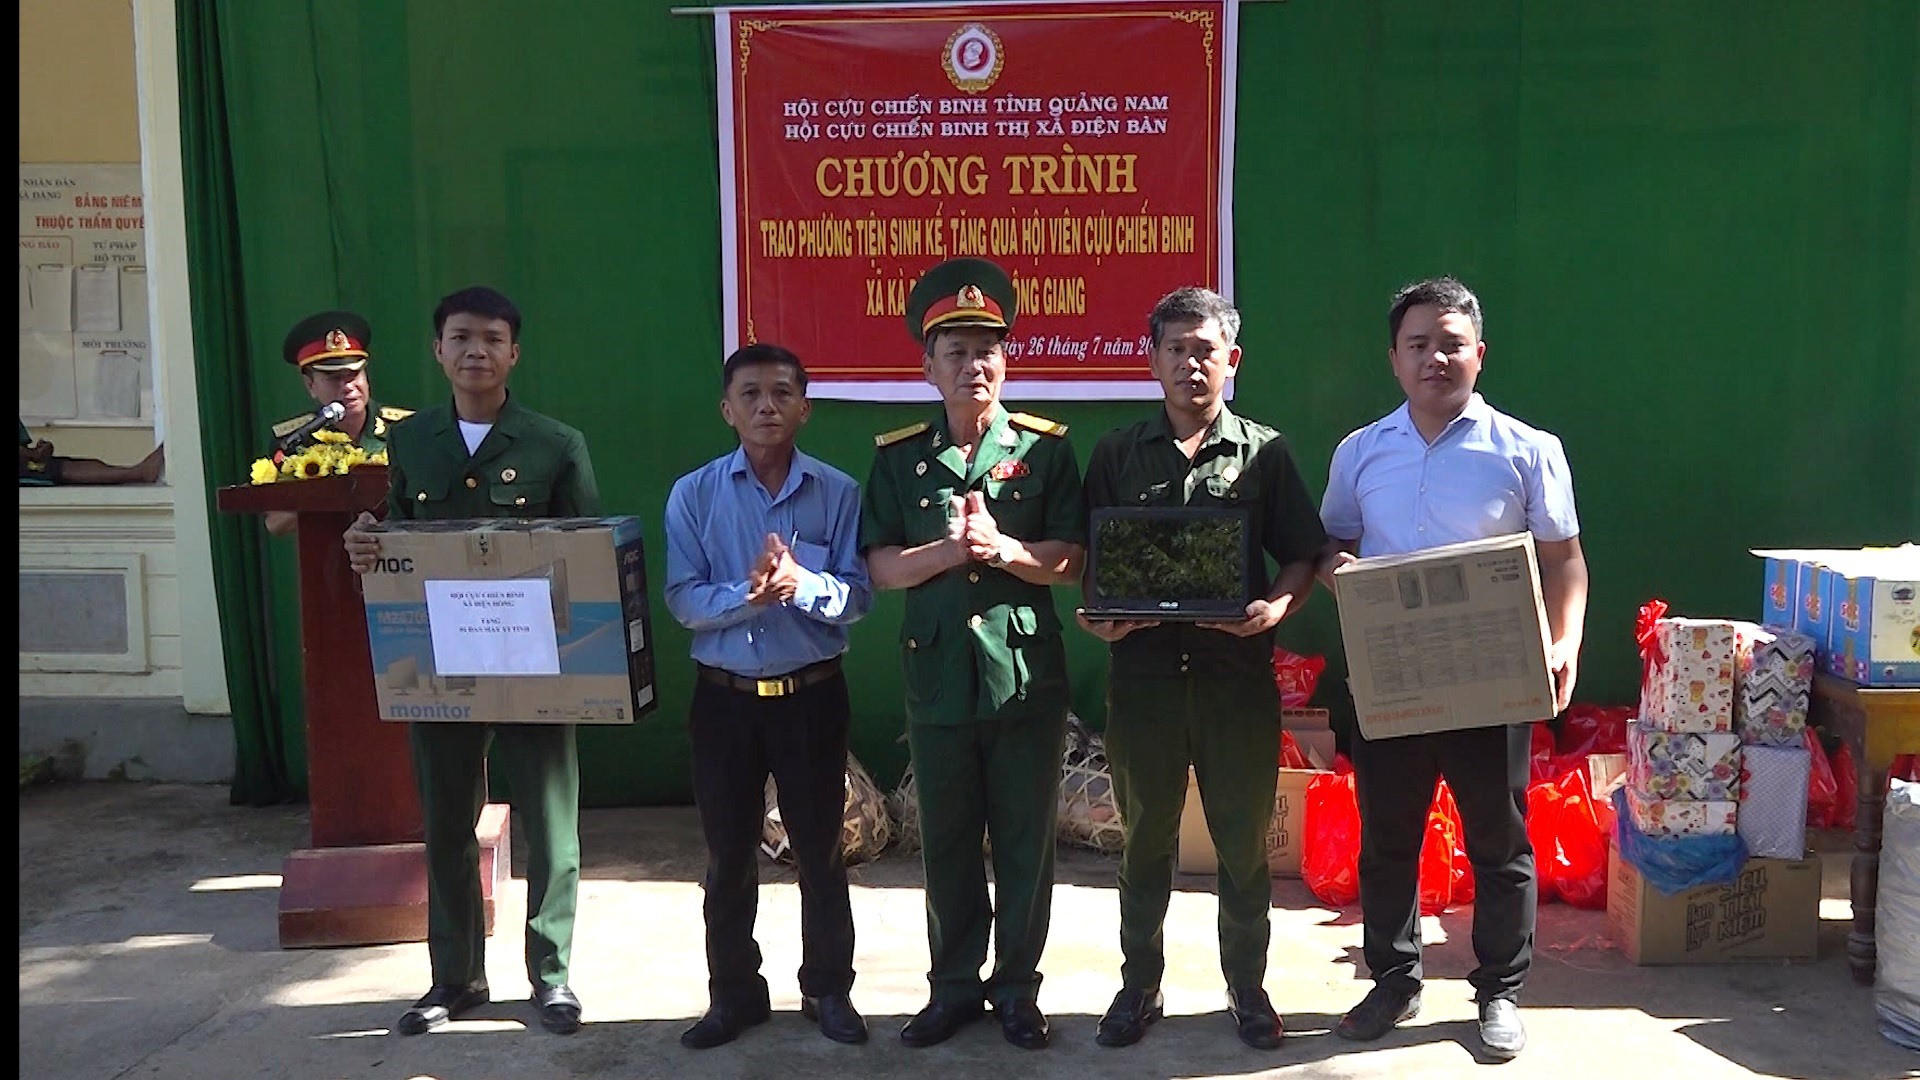 Hội CCB thị xã Điện Bàn trao phương tiện sinh kế cho hội viên CCB huyện Đông Giang. Ảnh: M.L